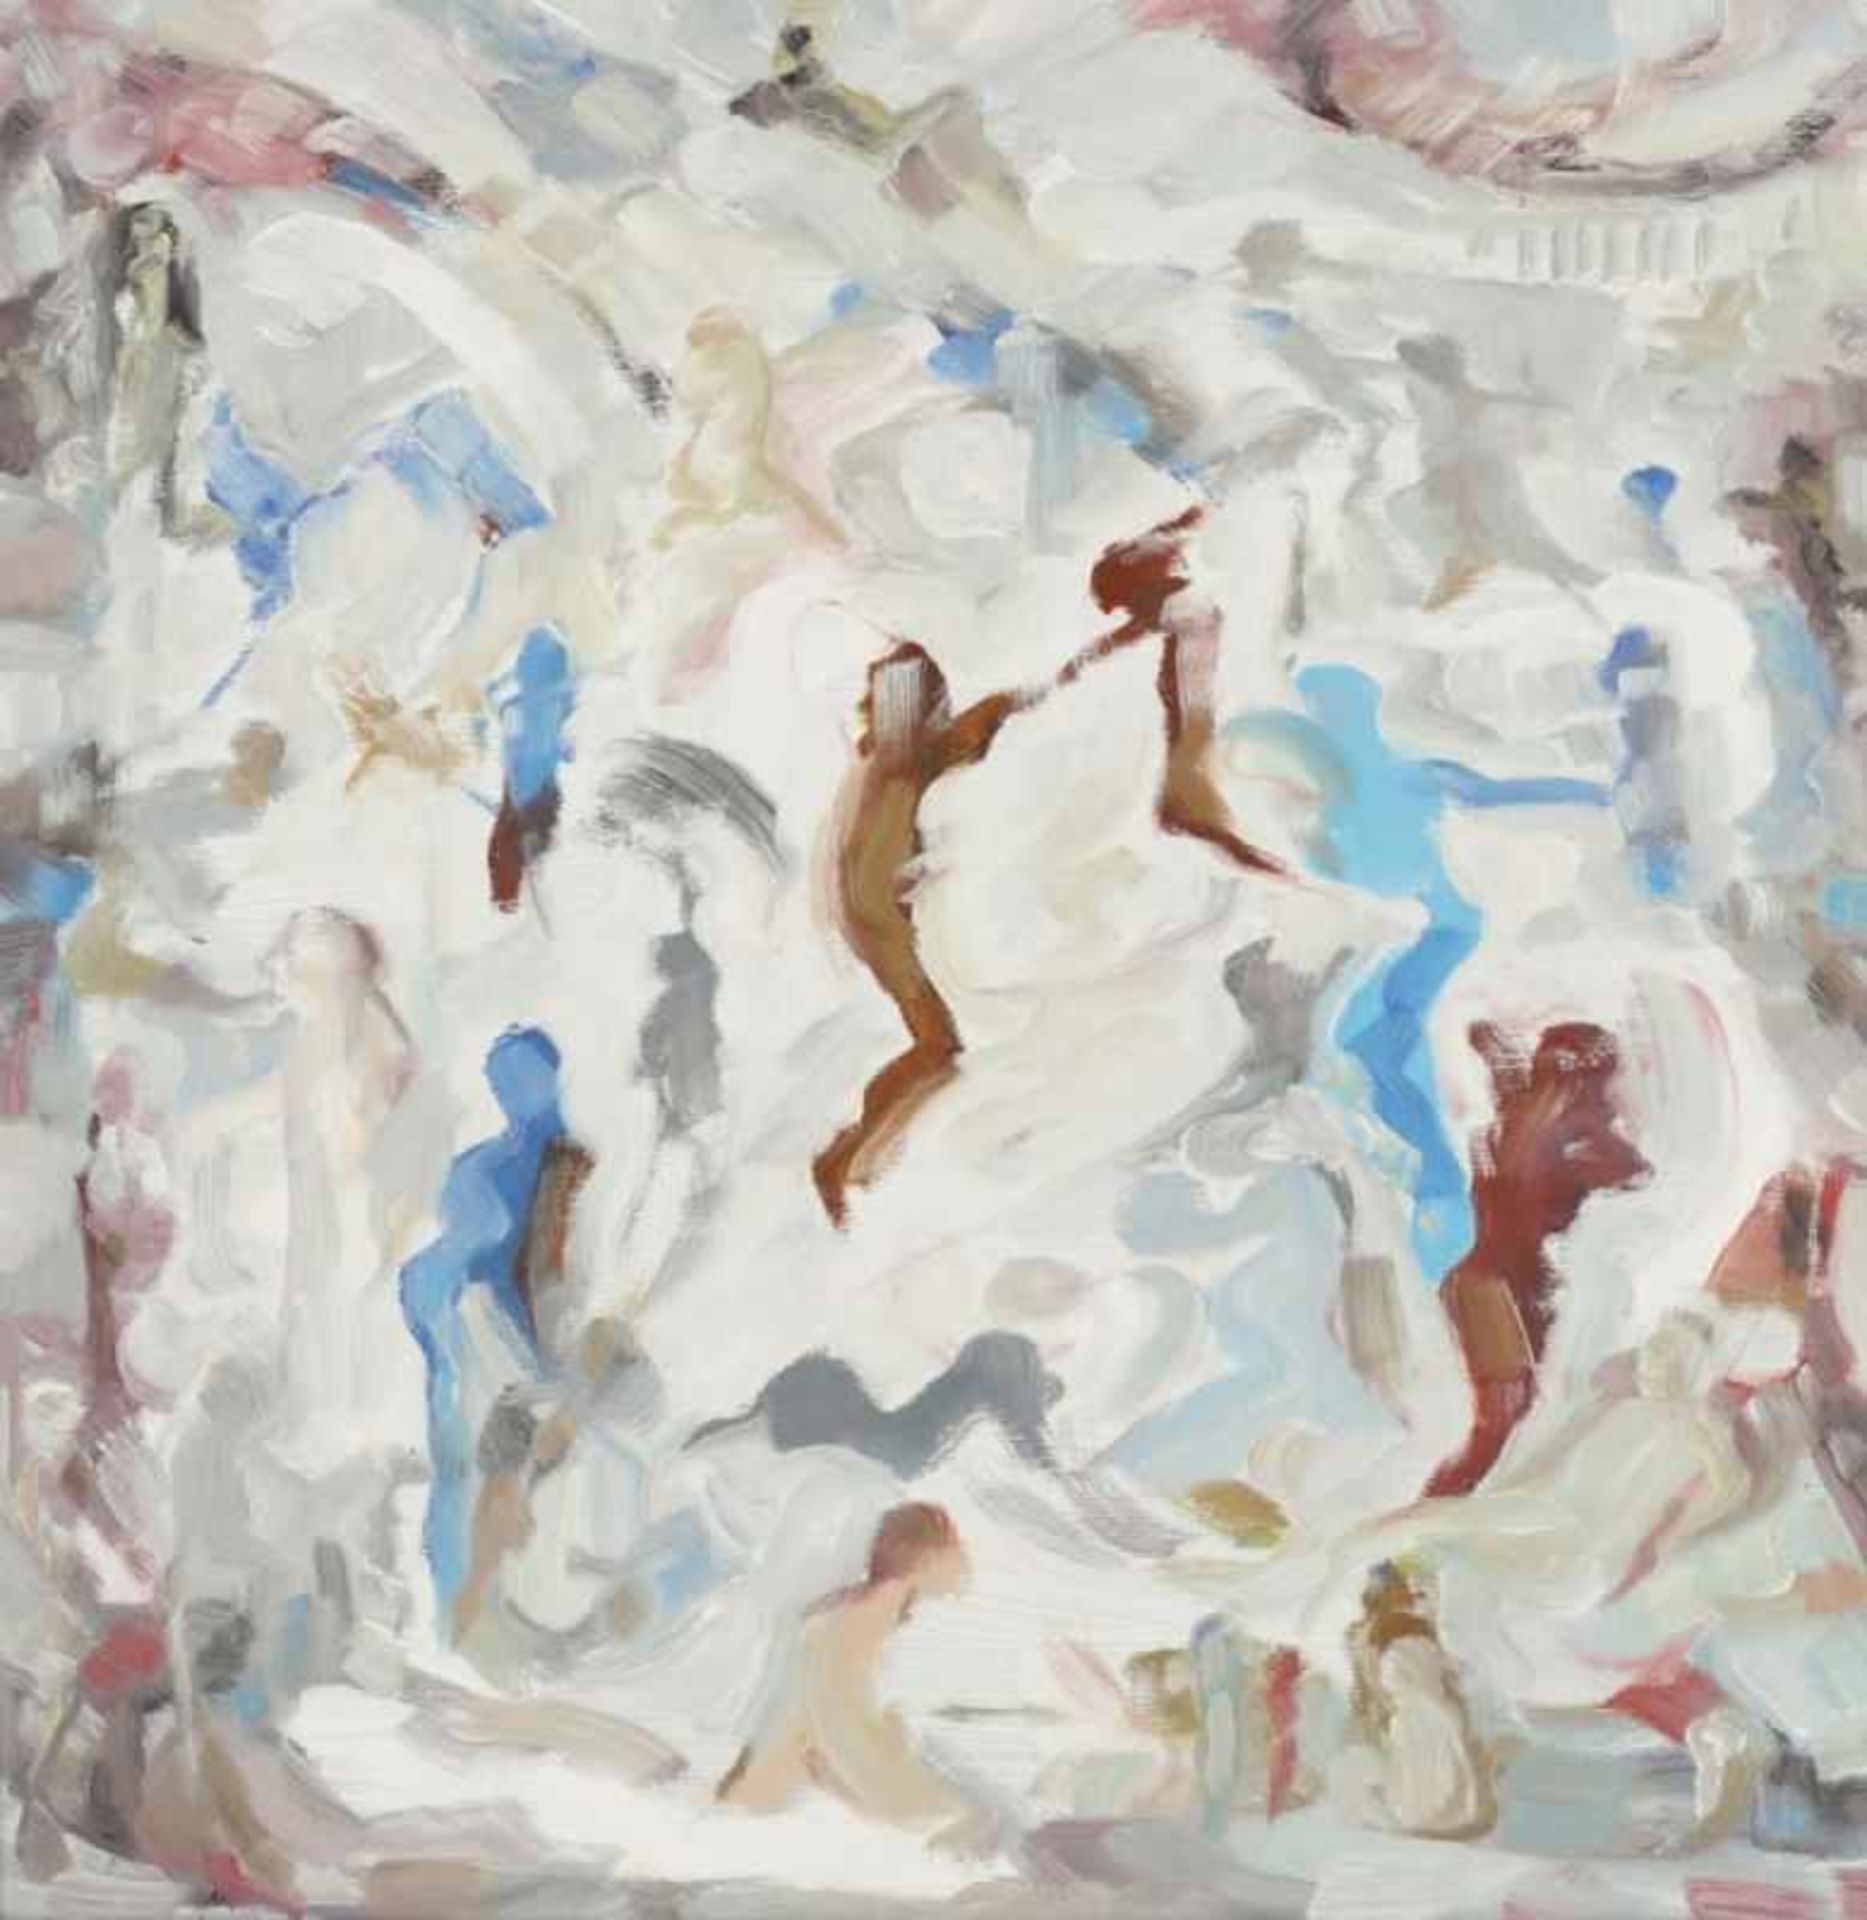 Harald Grunert1944 Berlin - "Tanz in Licht und Schatten I" - Öl/Lwd. 50 x 50 cm. Rückseitig auf